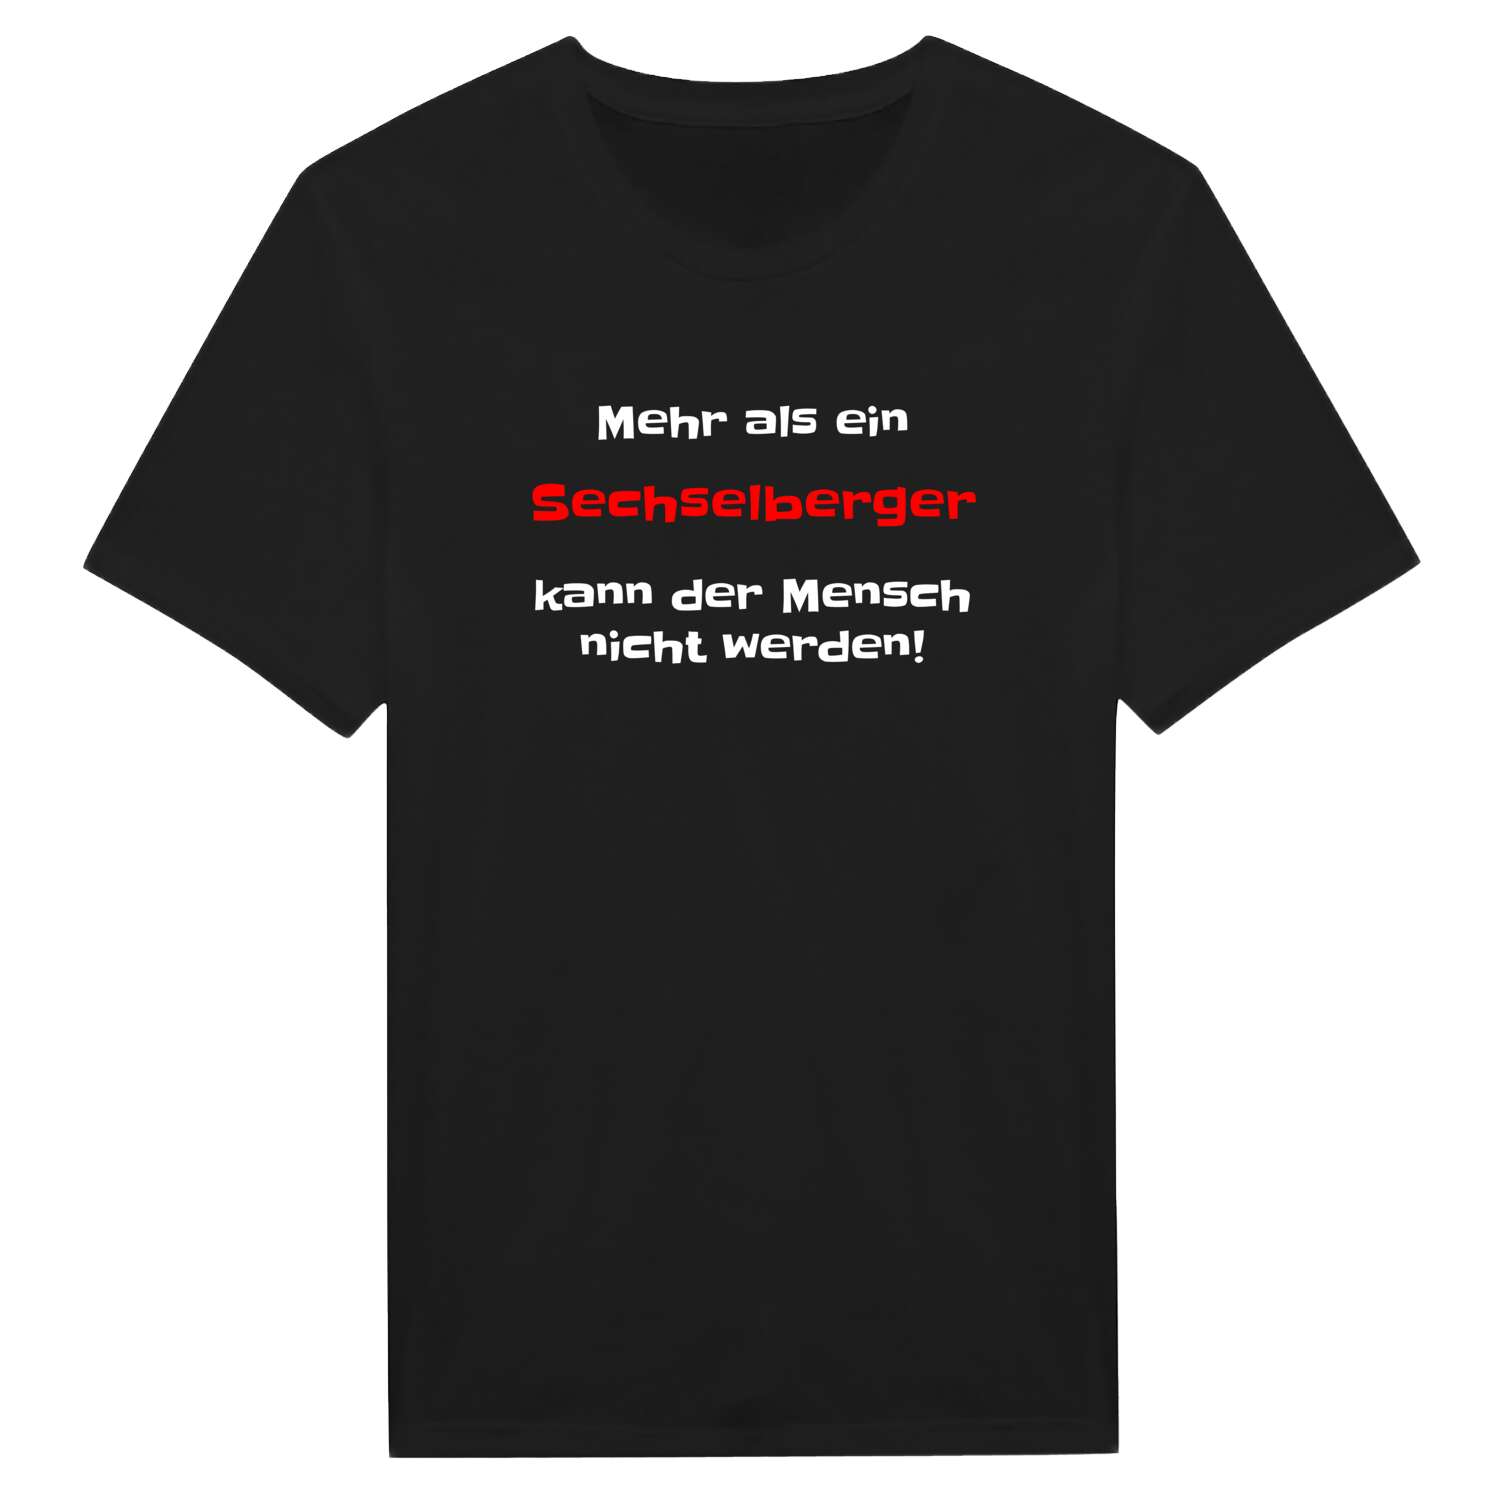 Sechselberg T-Shirt »Mehr als ein«